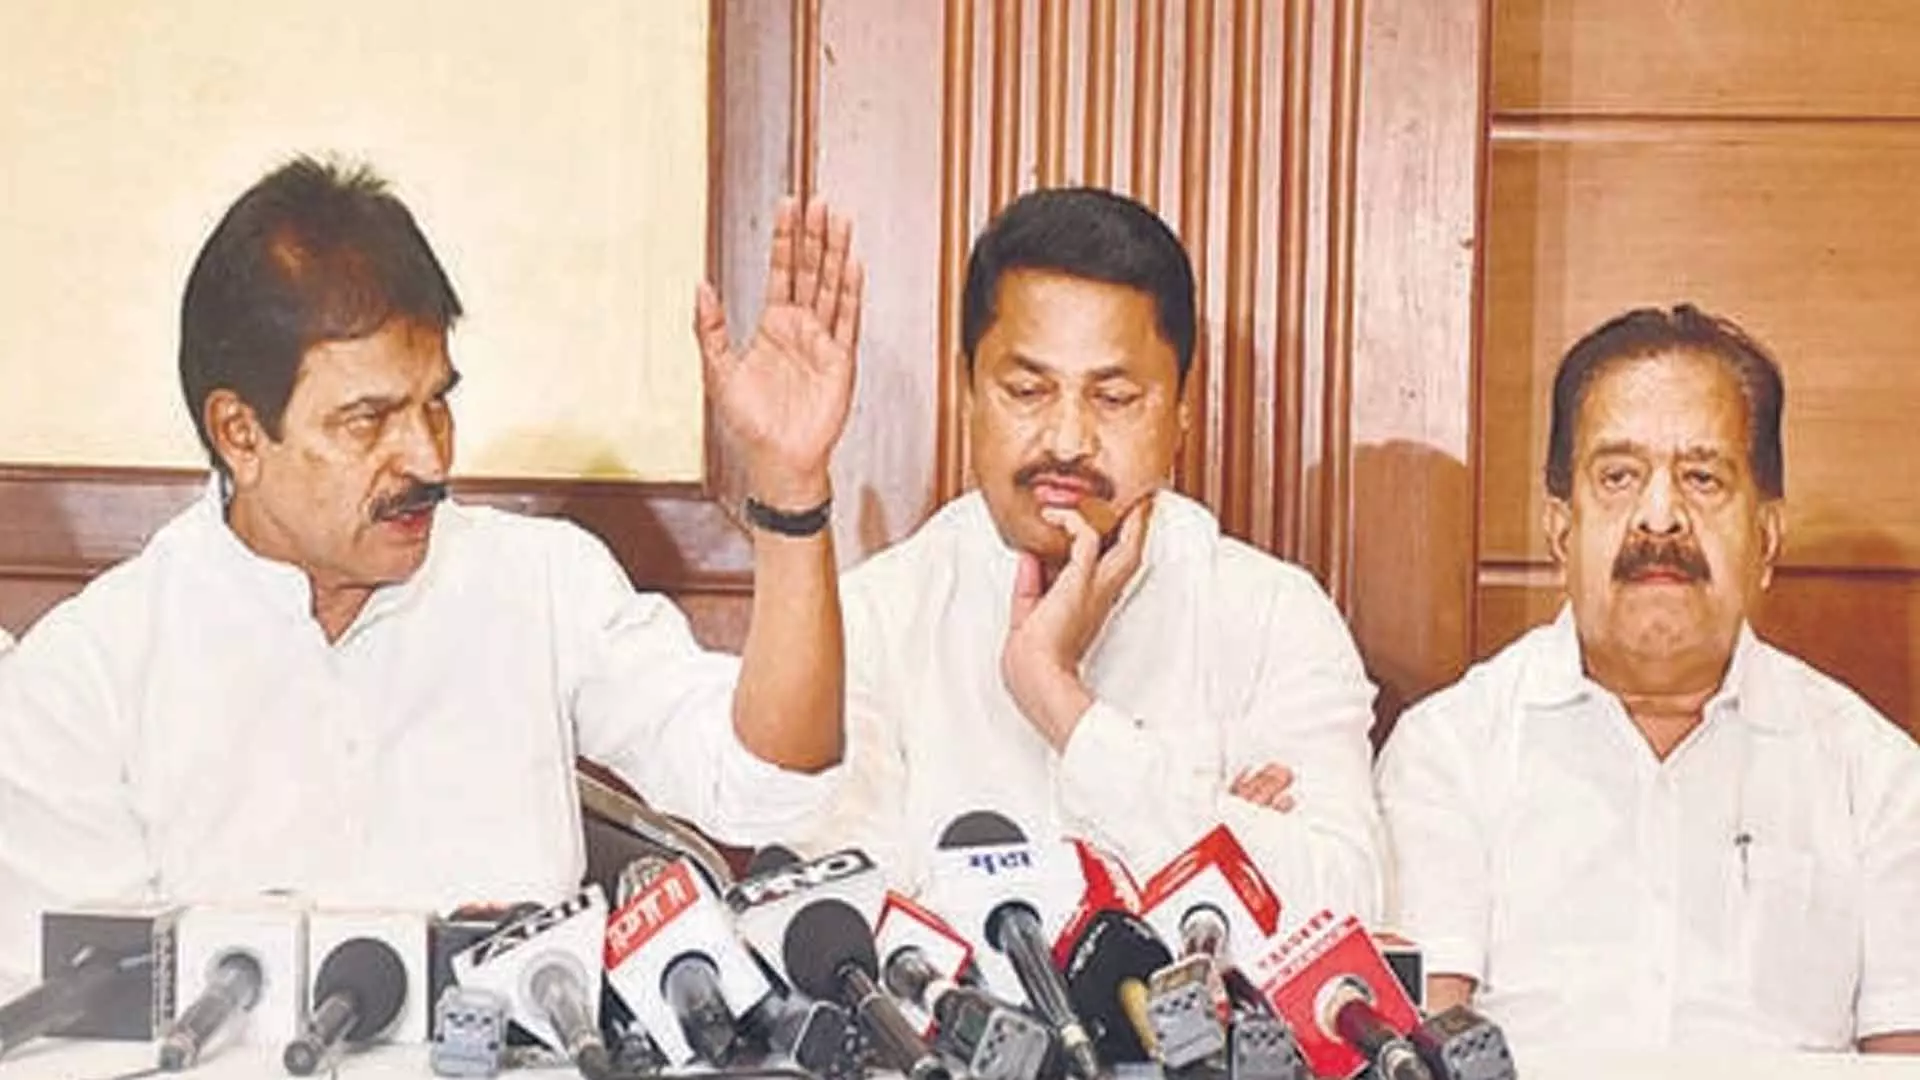 MUMBAI: सीट बंटवारे पर सहयोगी दलों के दबाव के आगे नहीं झुकेगी कांग्रेस